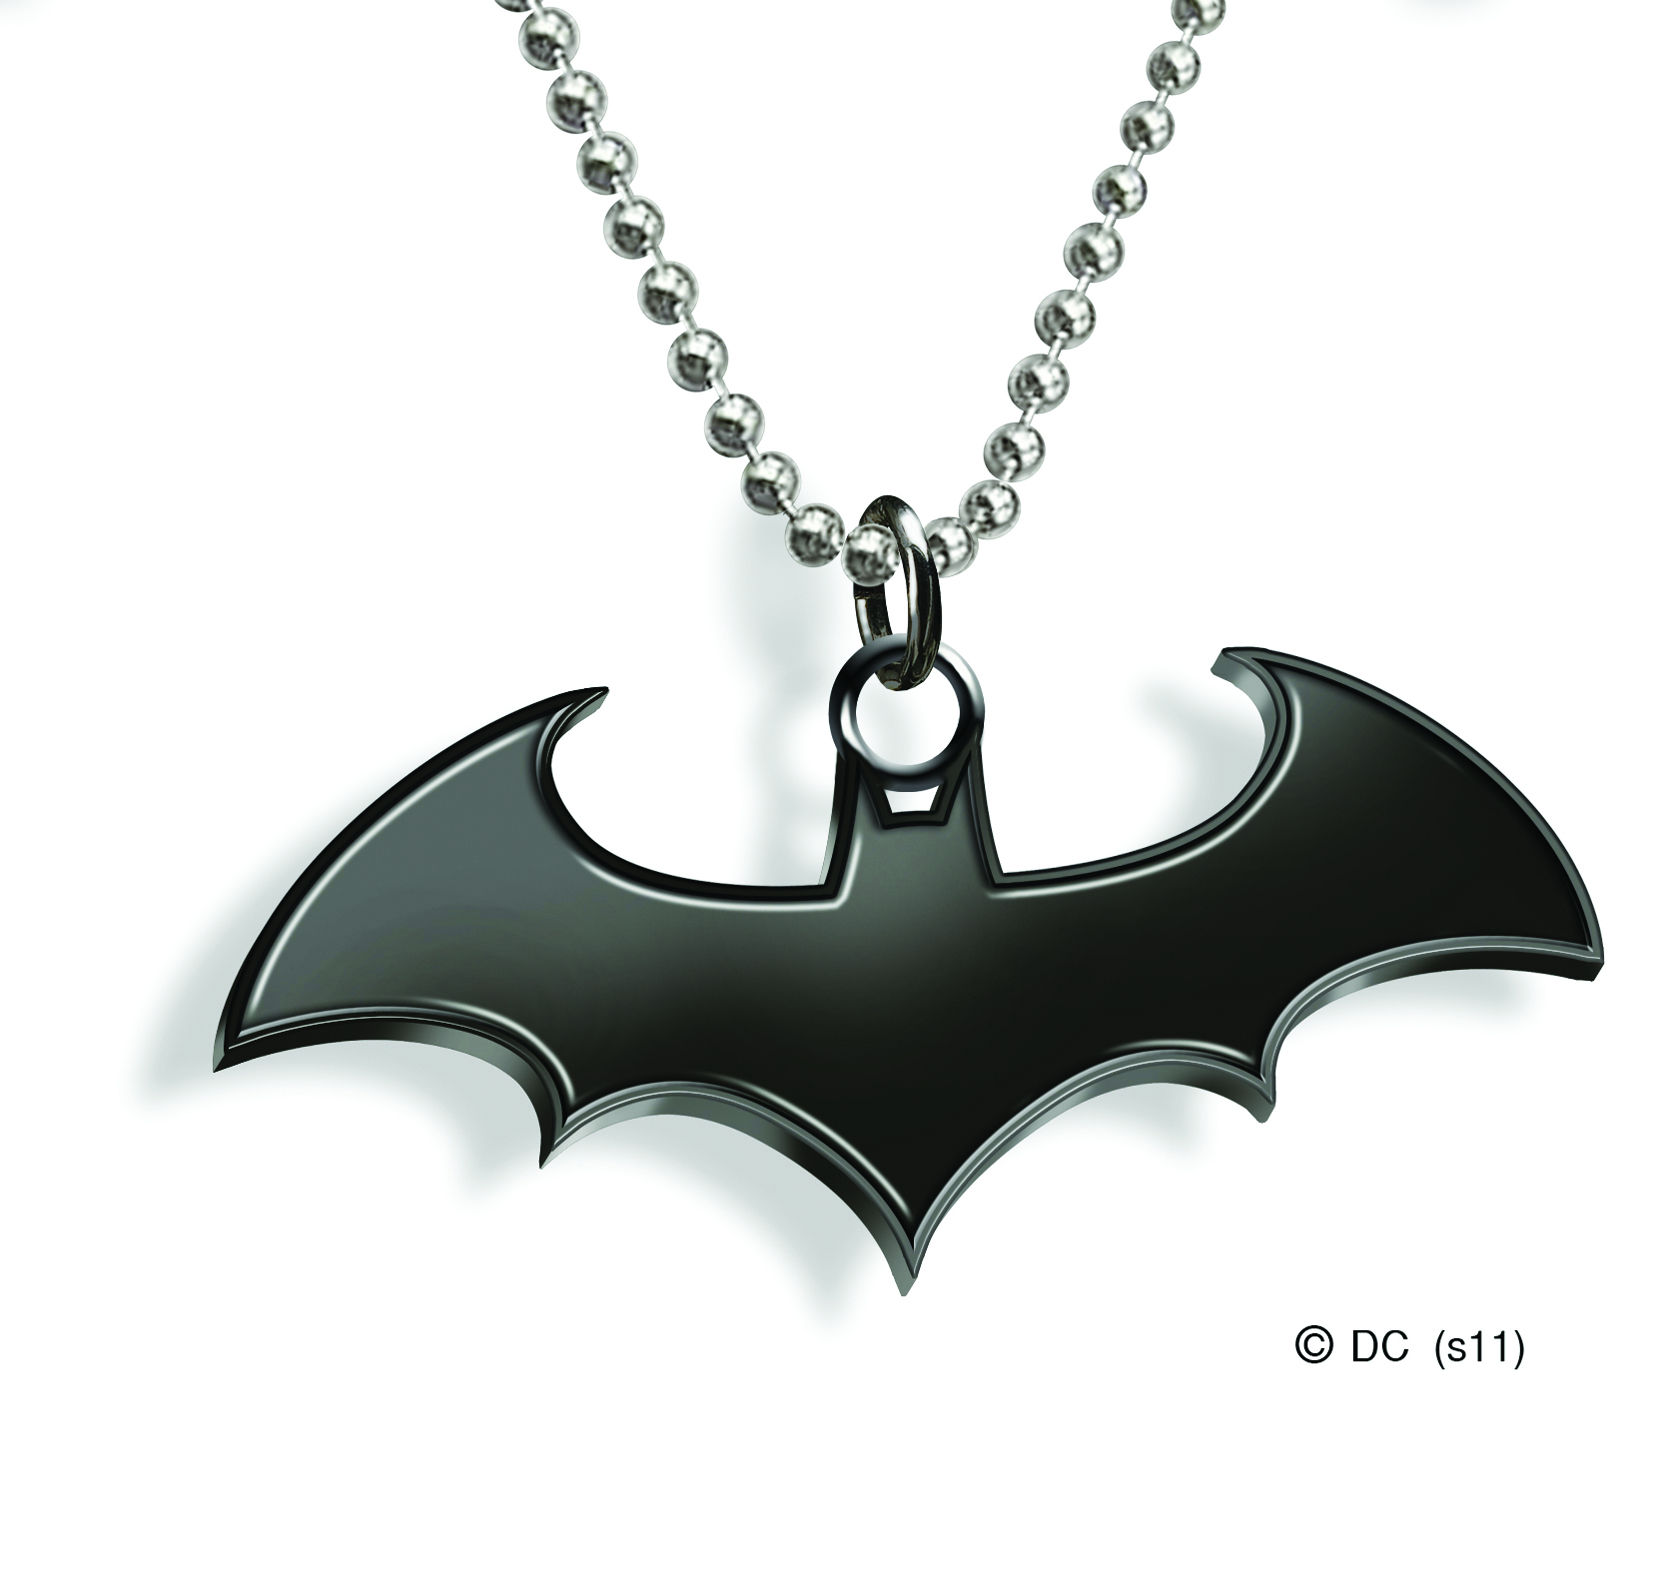 Batman Pendant Necklace For Unisex Silver 